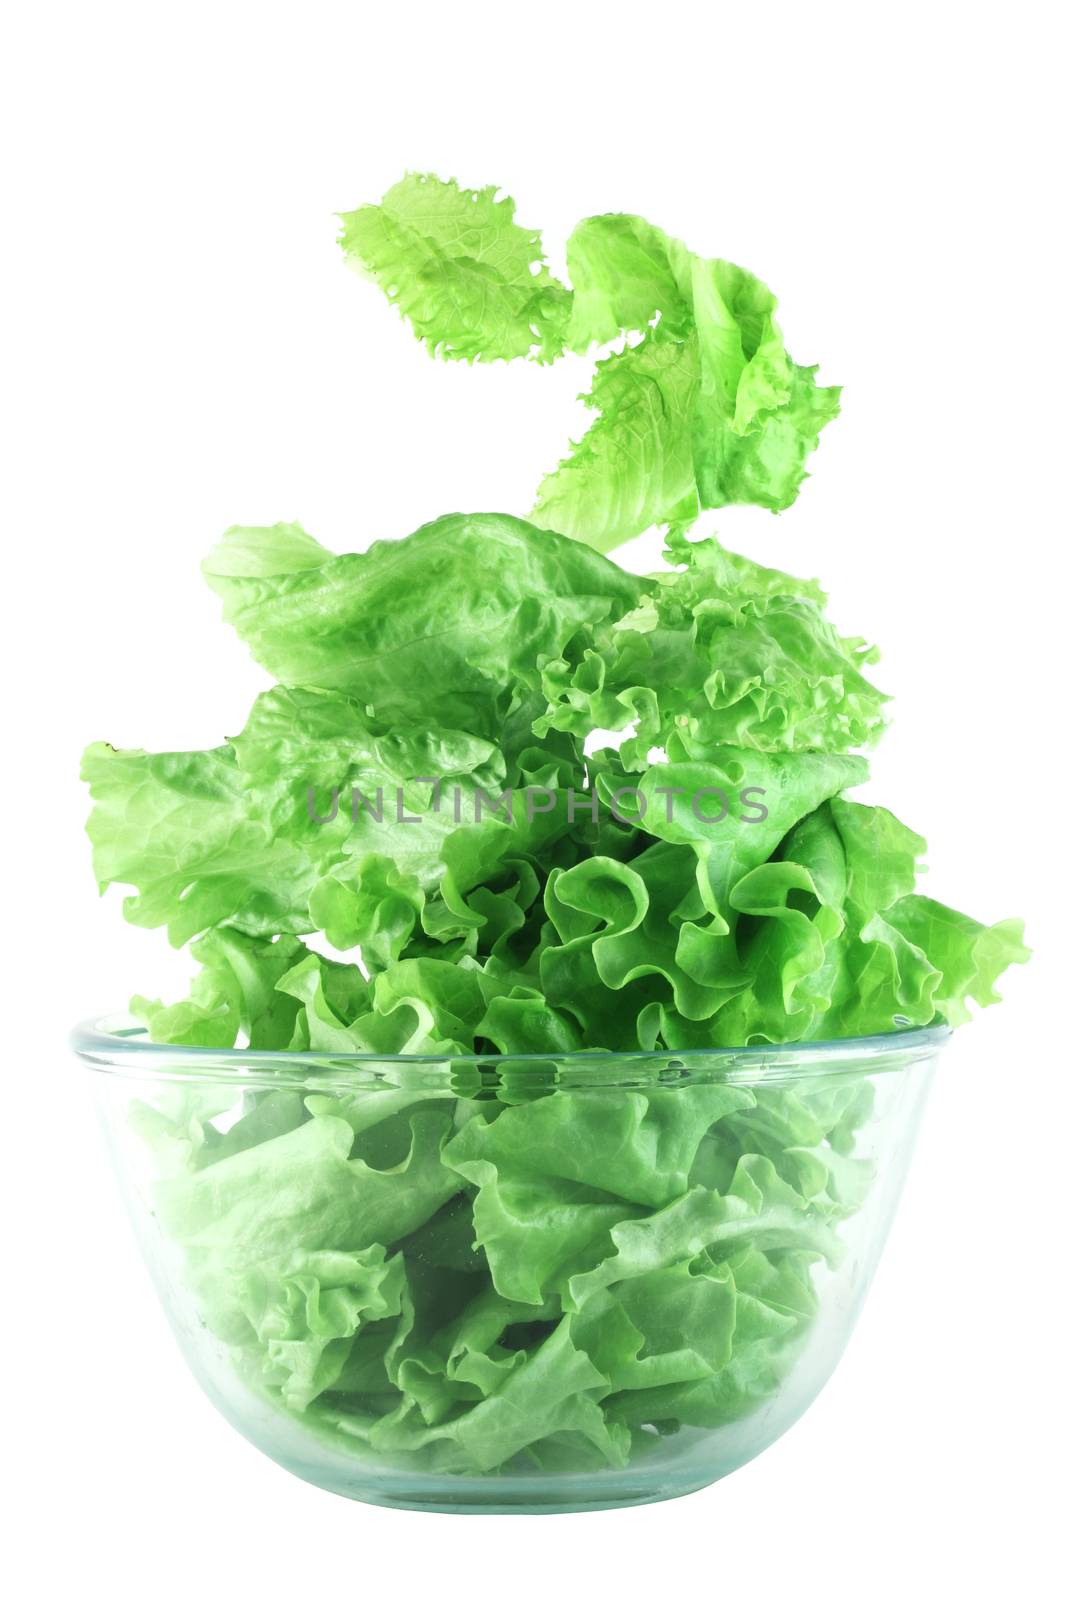  Light lettuce salad concept by destillat